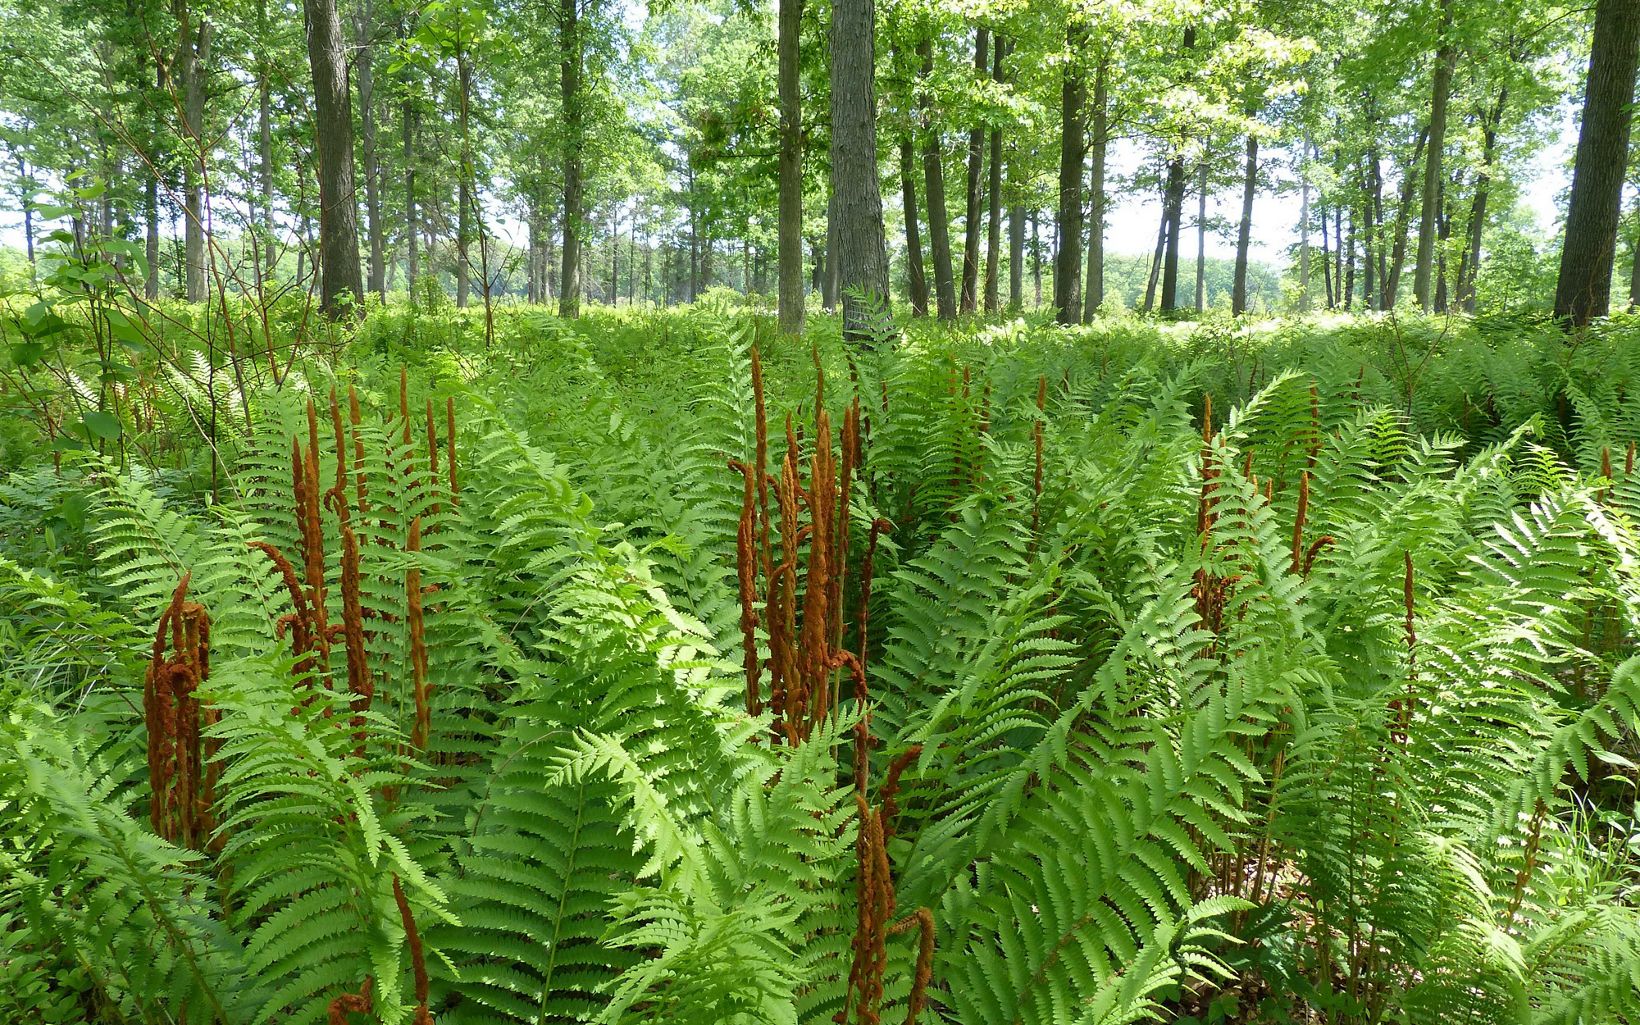 Cinnamon ferns in a field.